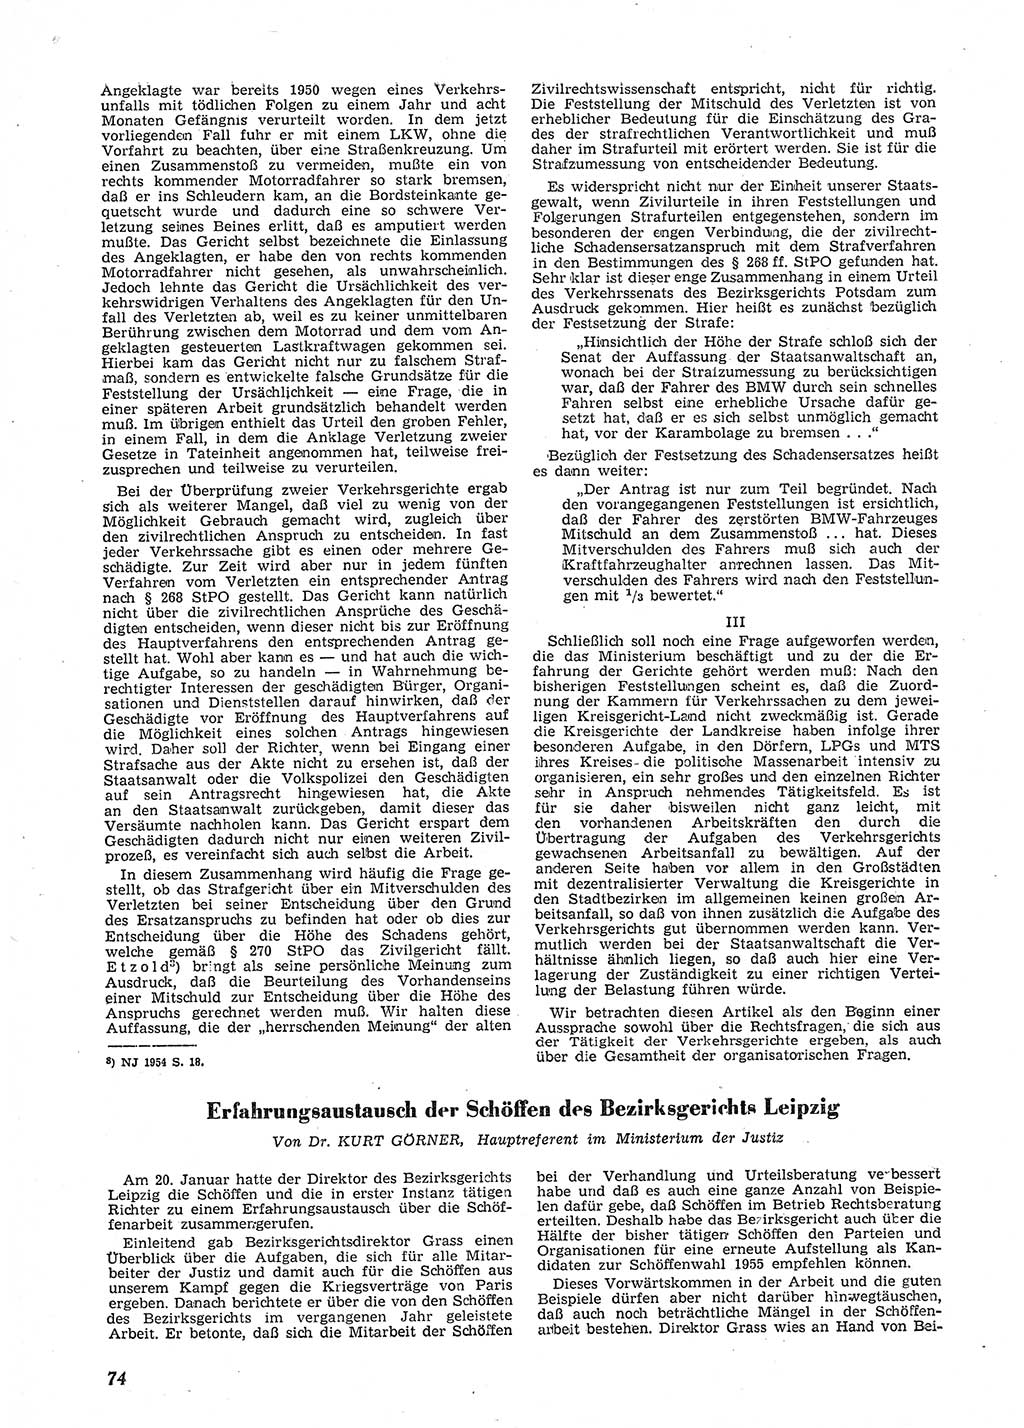 Neue Justiz (NJ), Zeitschrift für Recht und Rechtswissenschaft [Deutsche Demokratische Republik (DDR)], 9. Jahrgang 1955, Seite 74 (NJ DDR 1955, S. 74)